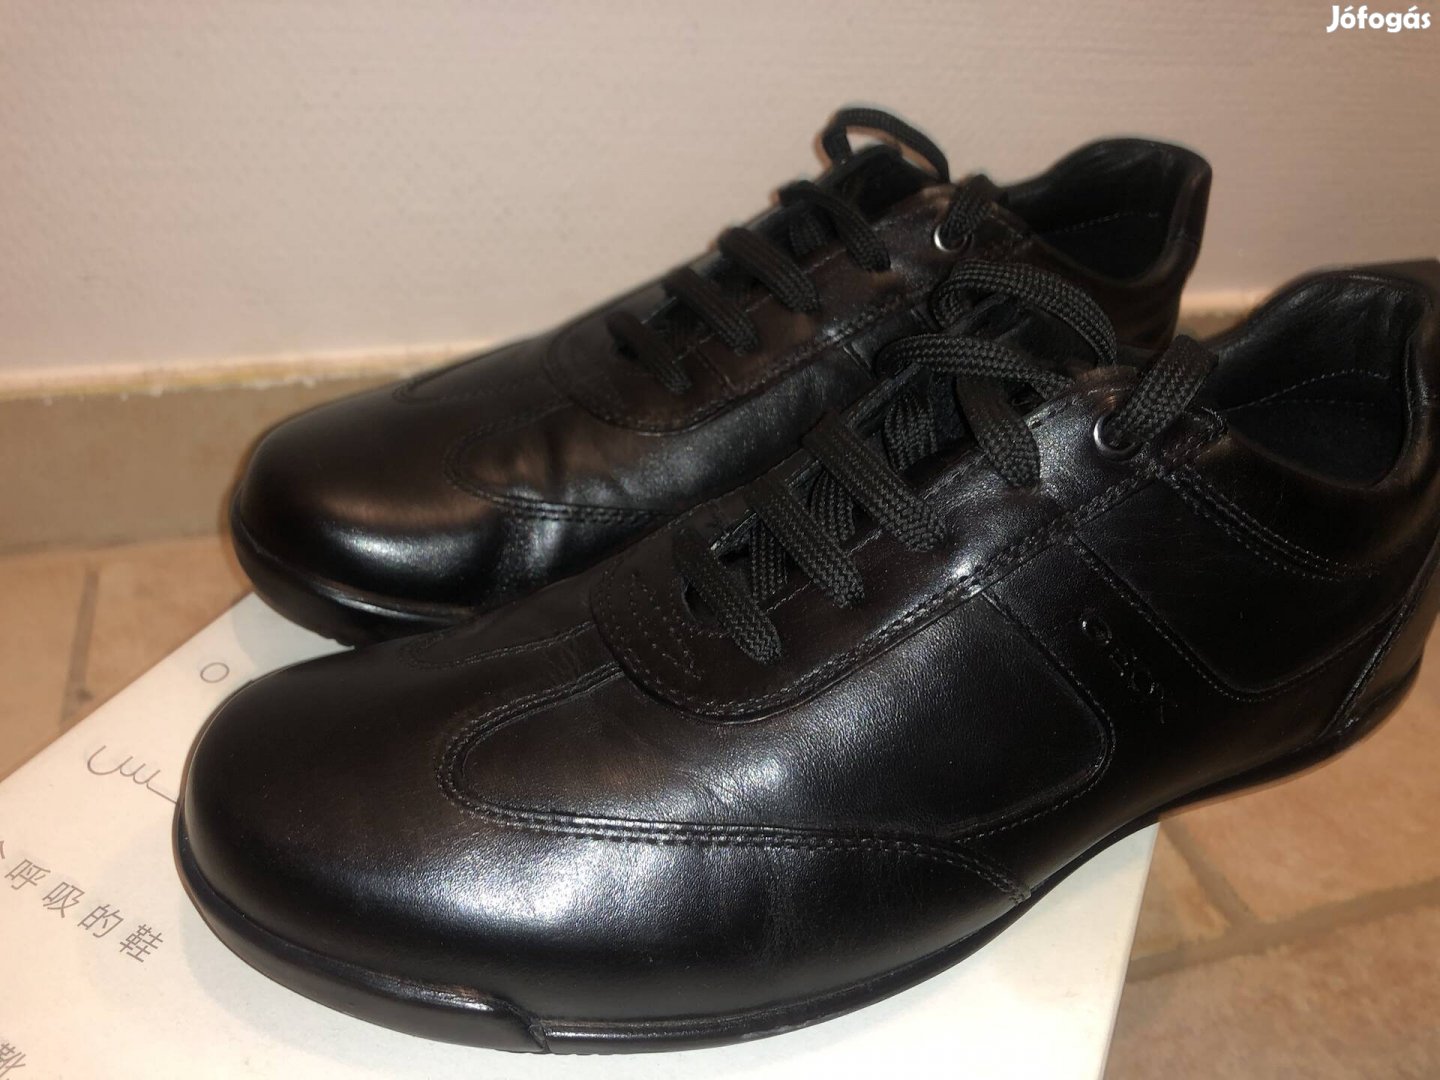 Geox lélegző eredeti bőr cipő (szinte új)